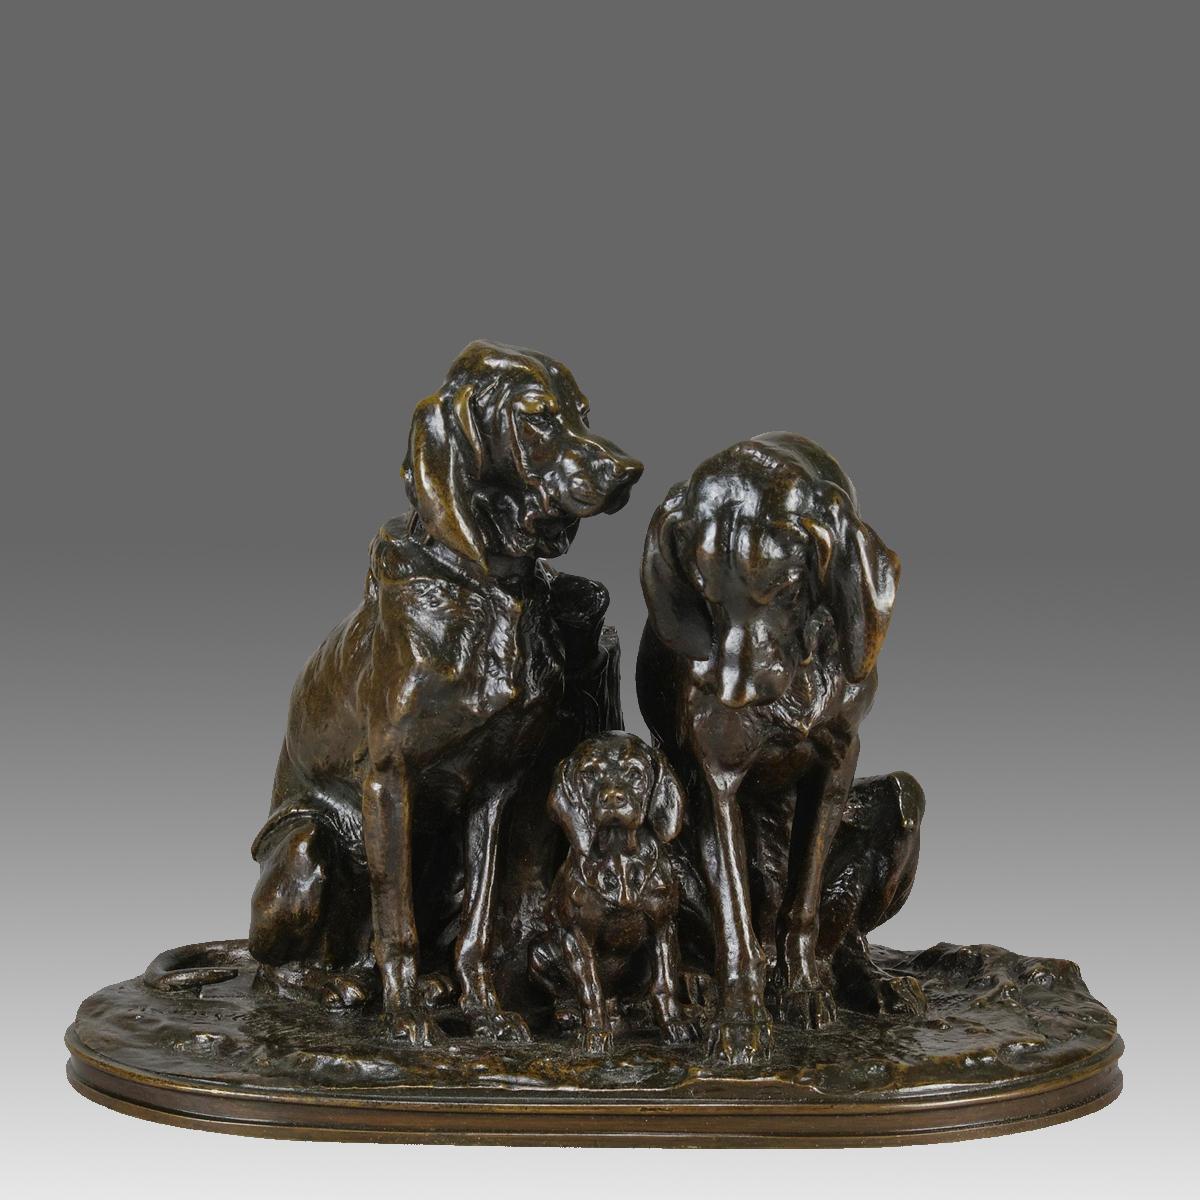 Charmant groupe en bronze animalier de la fin du XIXe siècle représentant une famille de chiens courants. Le bronze de trois chiens assis, comprenant une mère, un père et un chiot, présente une excellente patine brune riche et de très beaux détails